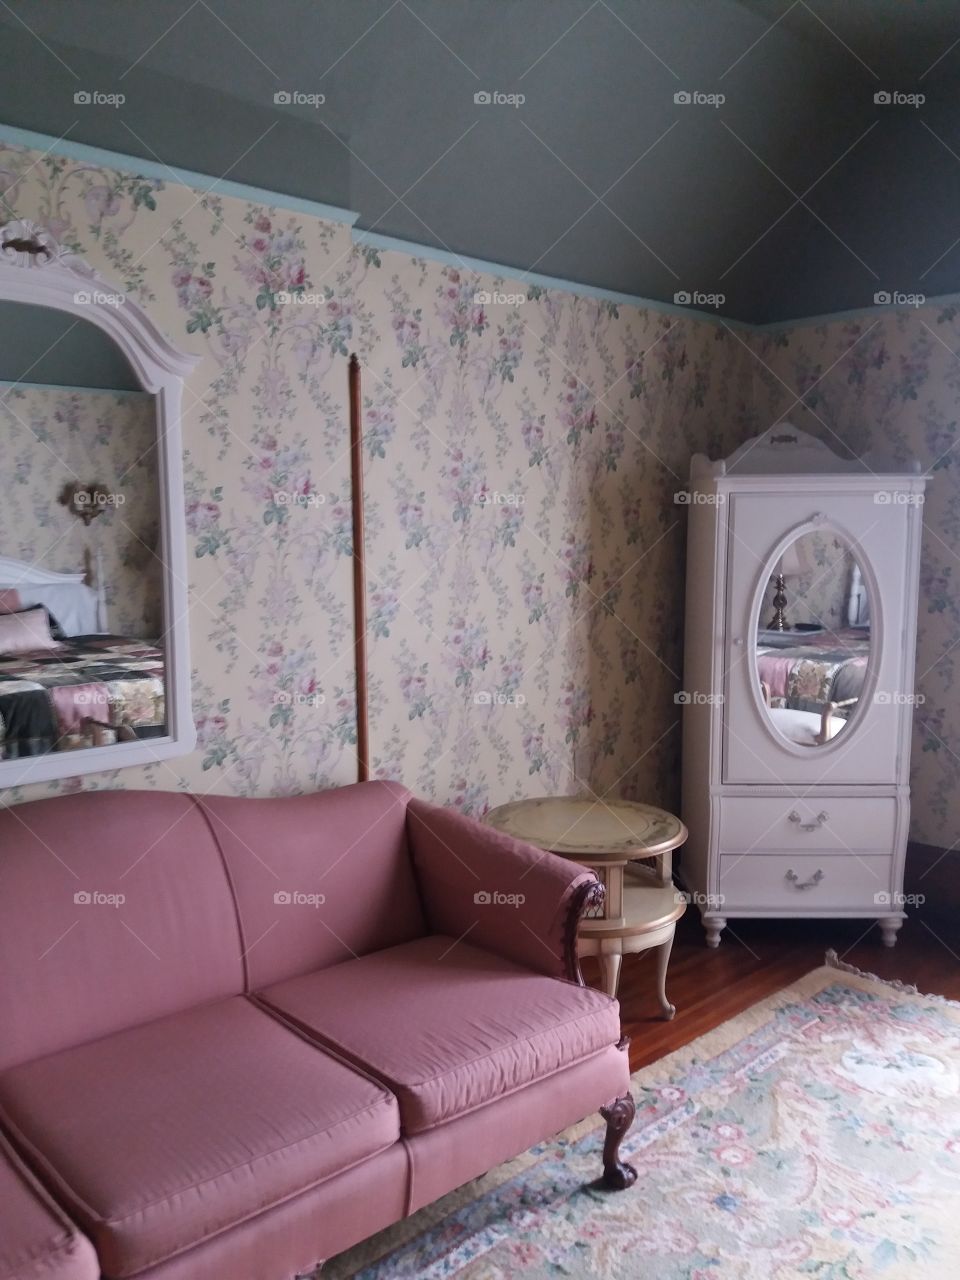 lovely room